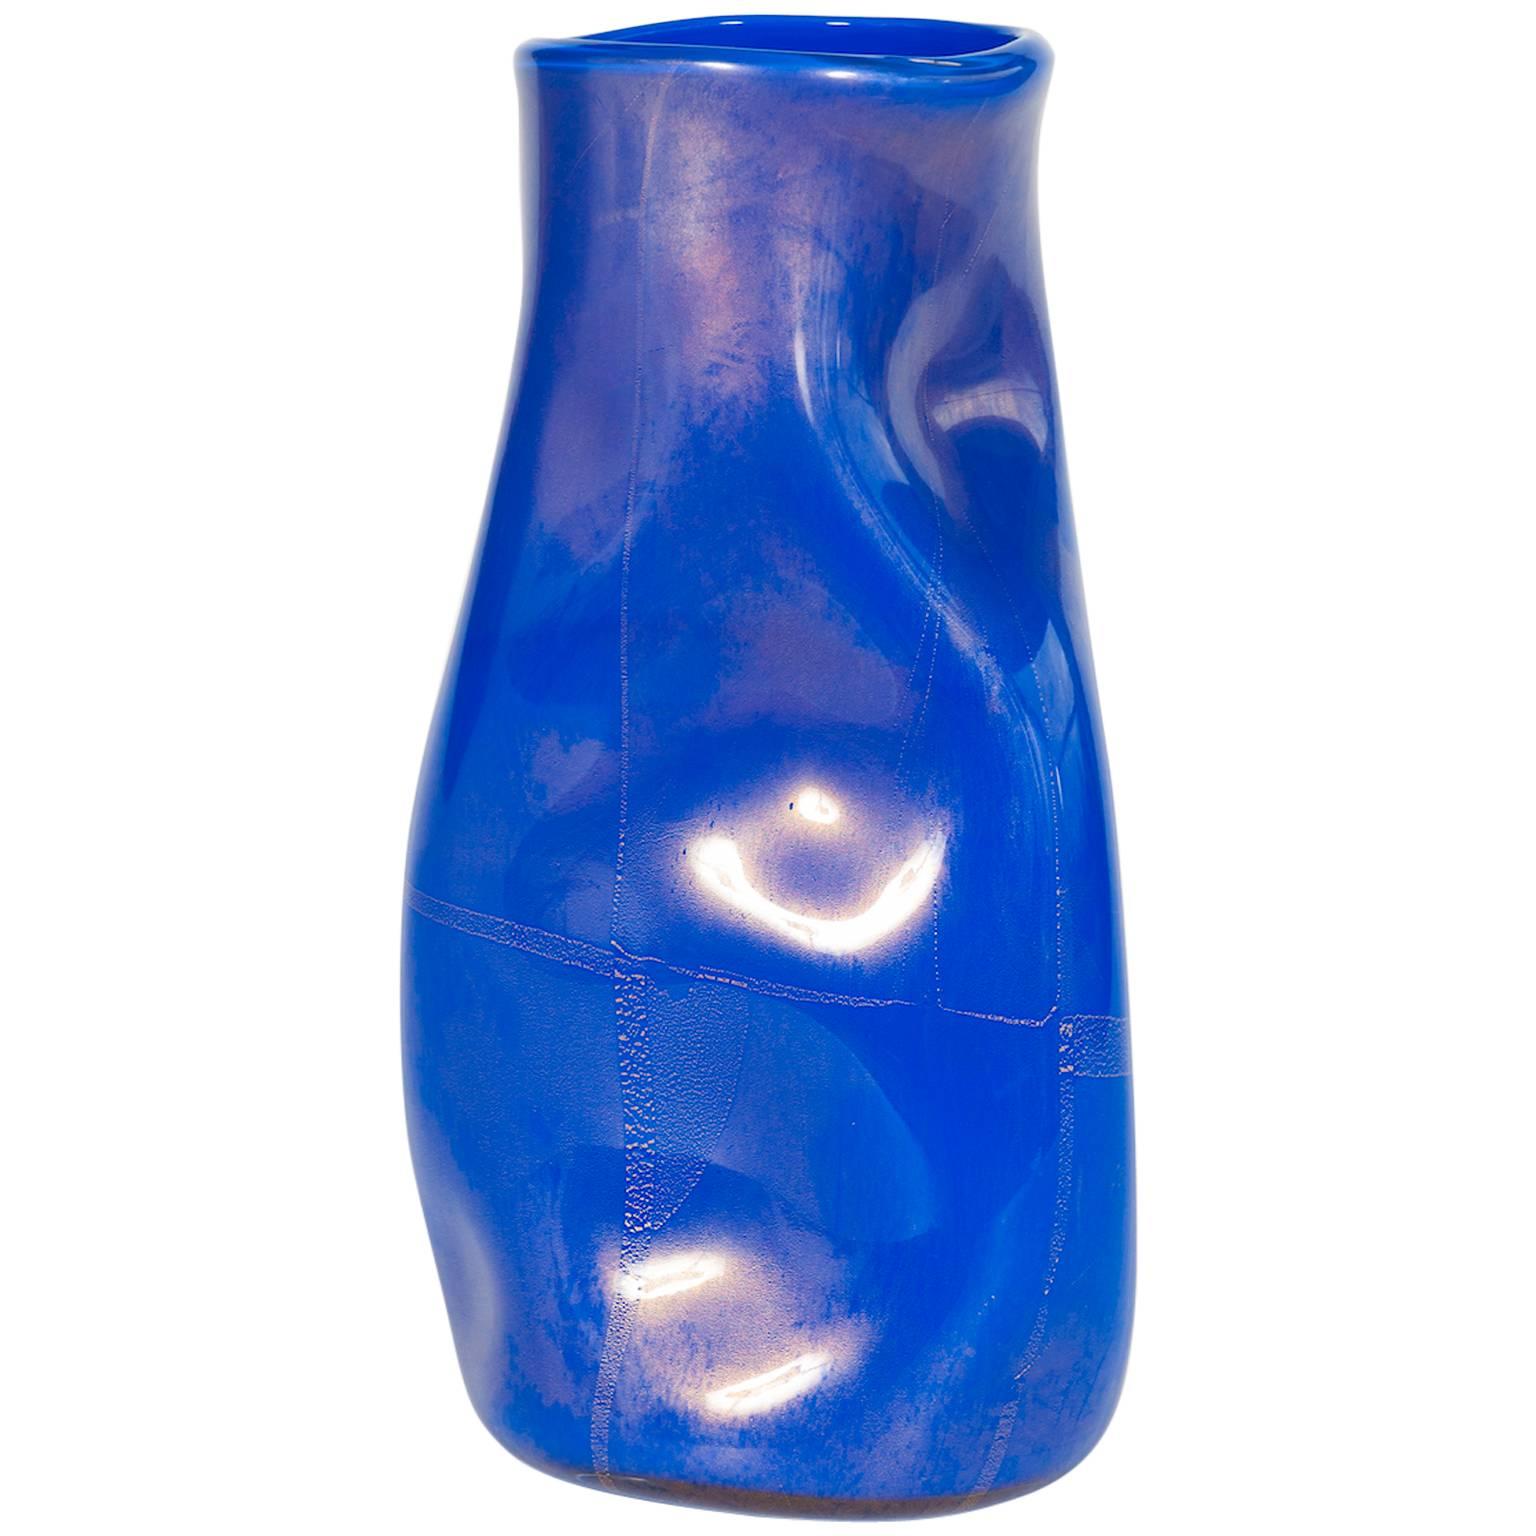 Italian Vase in Murano Glass "Crumple" blue and gold, contemporary